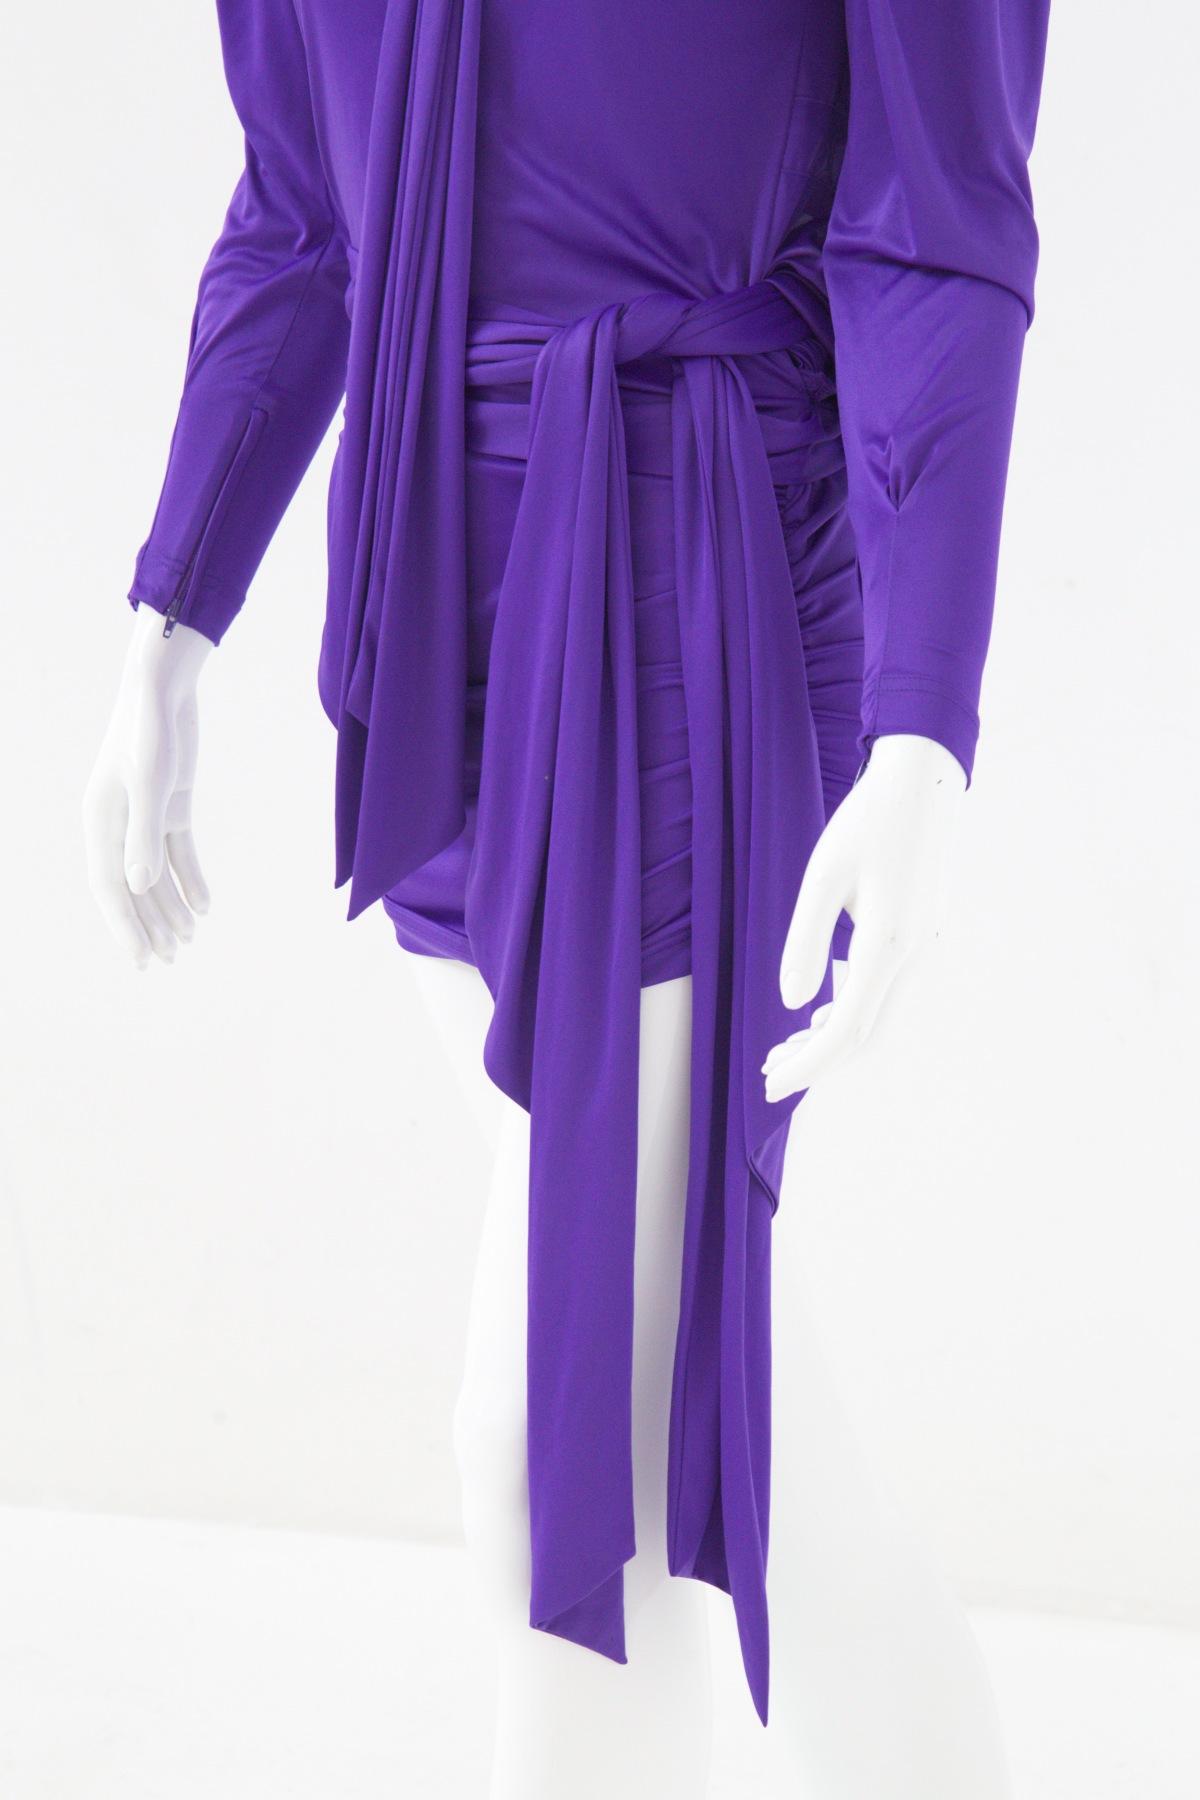 Violet Balenciaga - Robe violette luxueuse vintage en vente